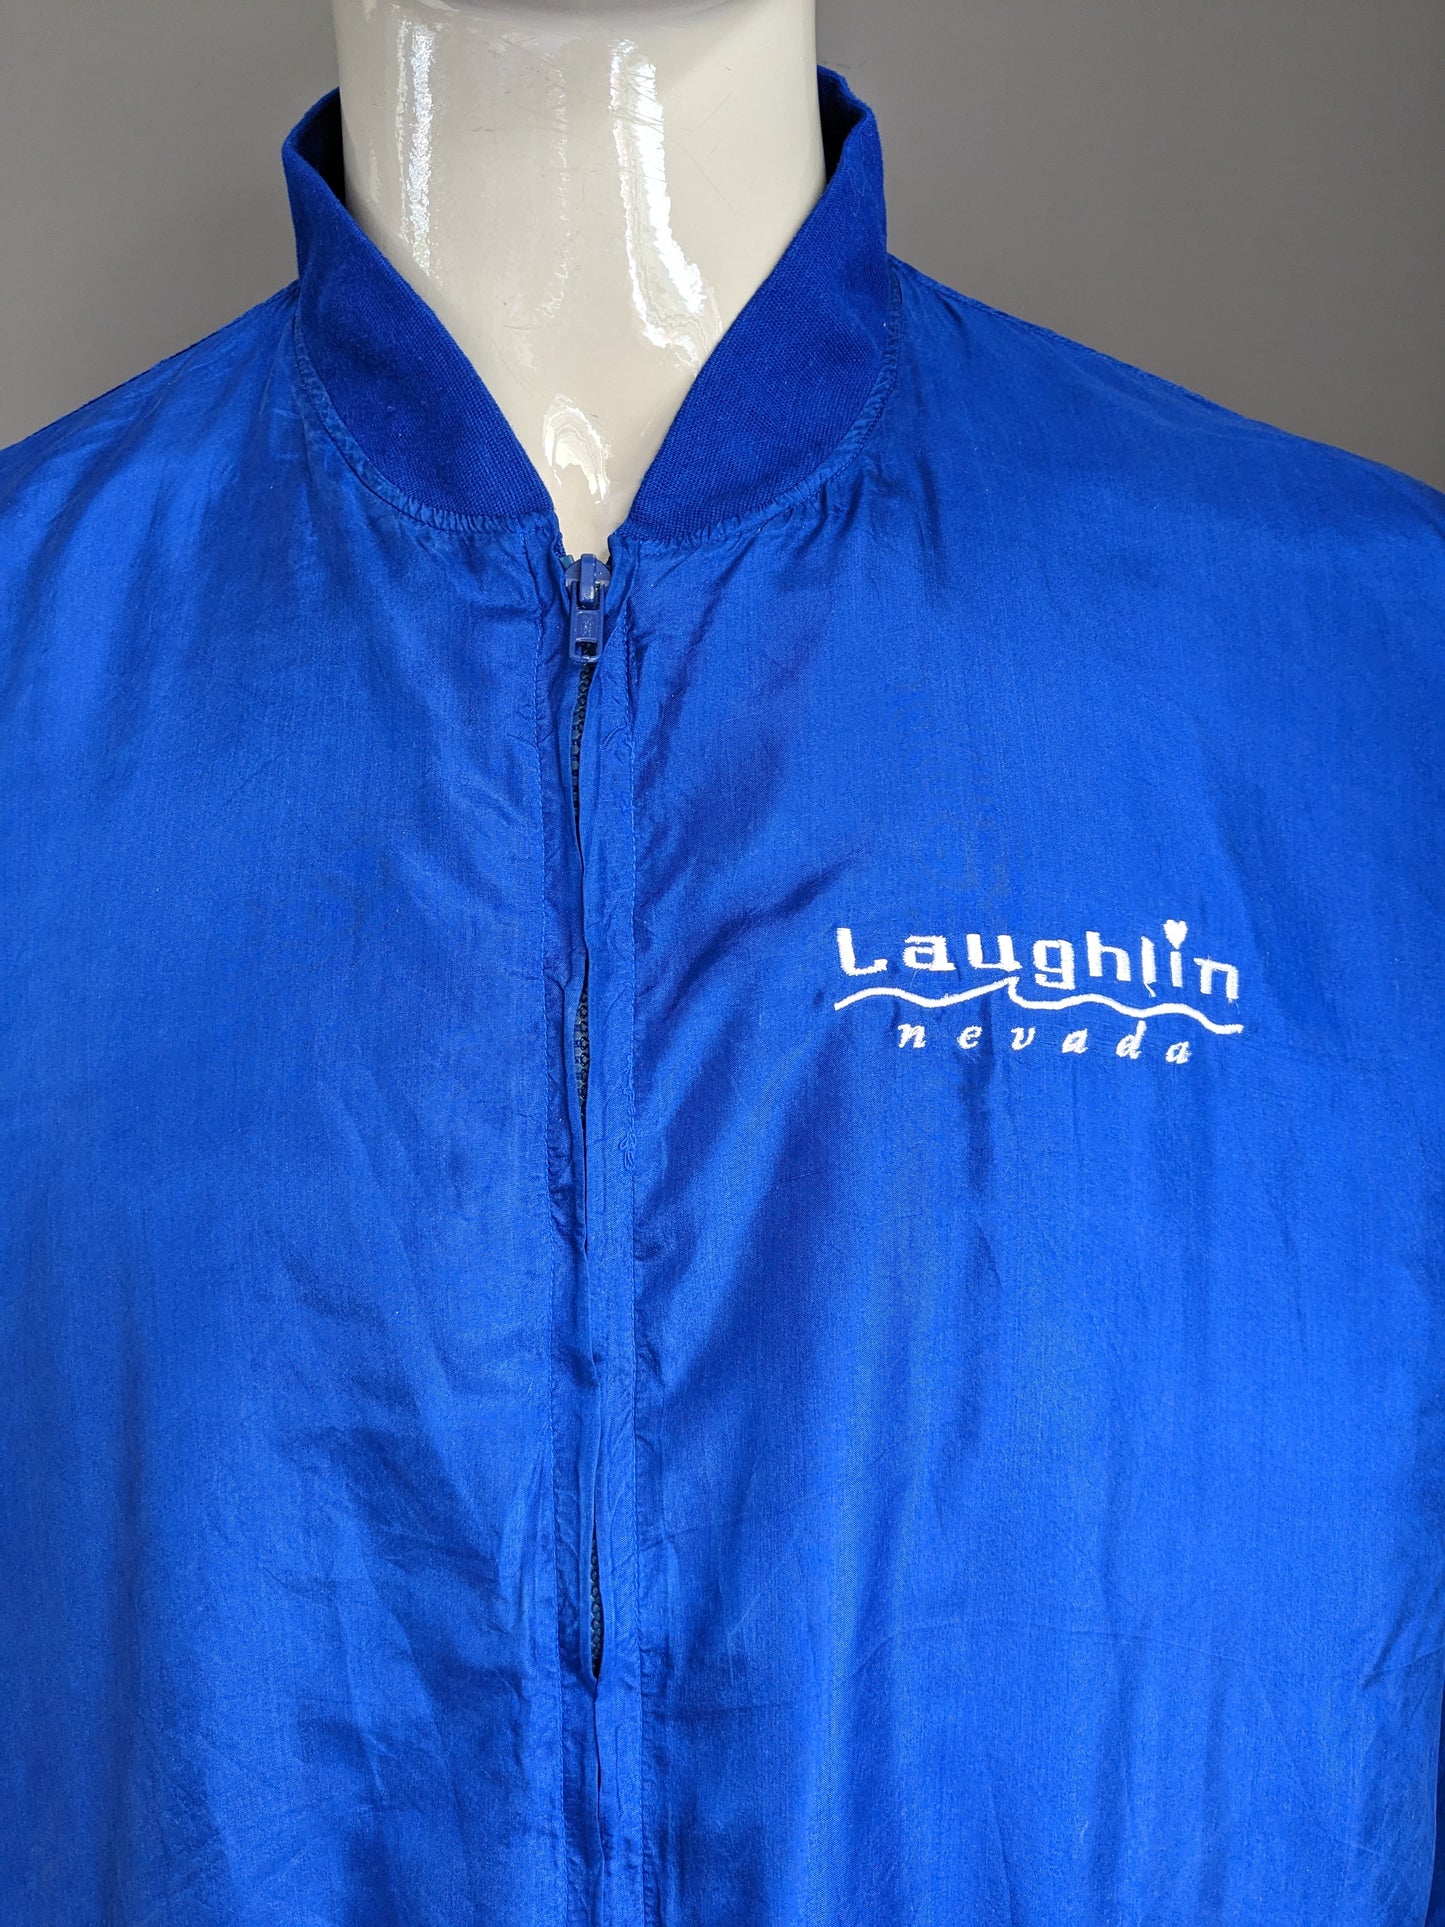 Jack di seta attivo di seta attivo 80S-anni '90 vintage. "Laughlin Nevada". Colorato blu. Taglia L / XL.